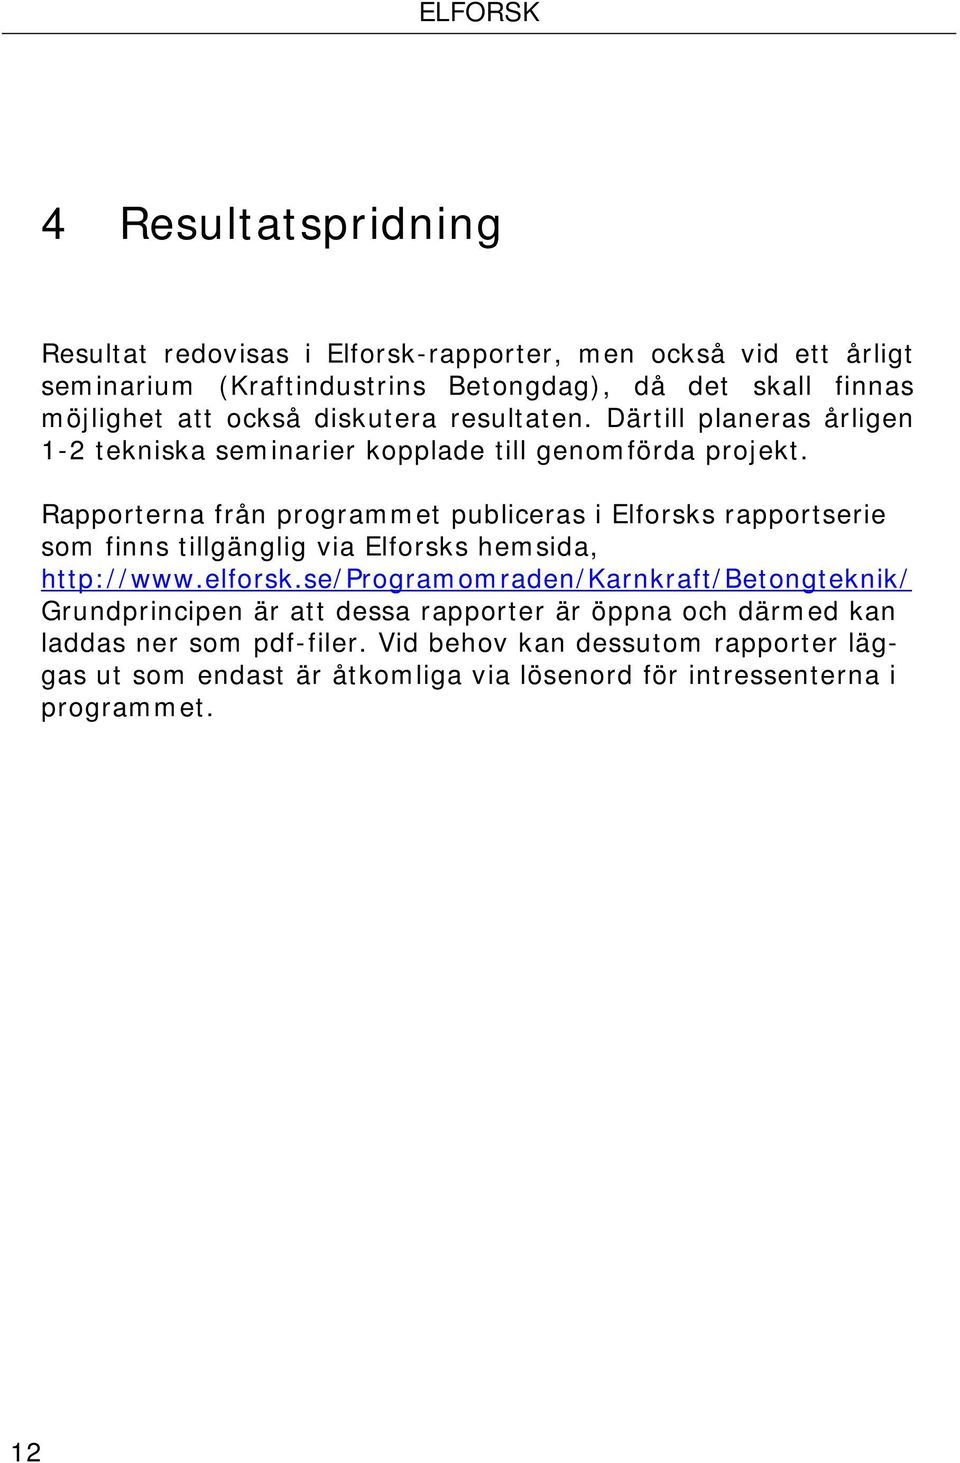 Rapporterna från programmet publiceras i Elforsks rapportserie som finns tillgänglig via Elforsks hemsida, http://www.elforsk.